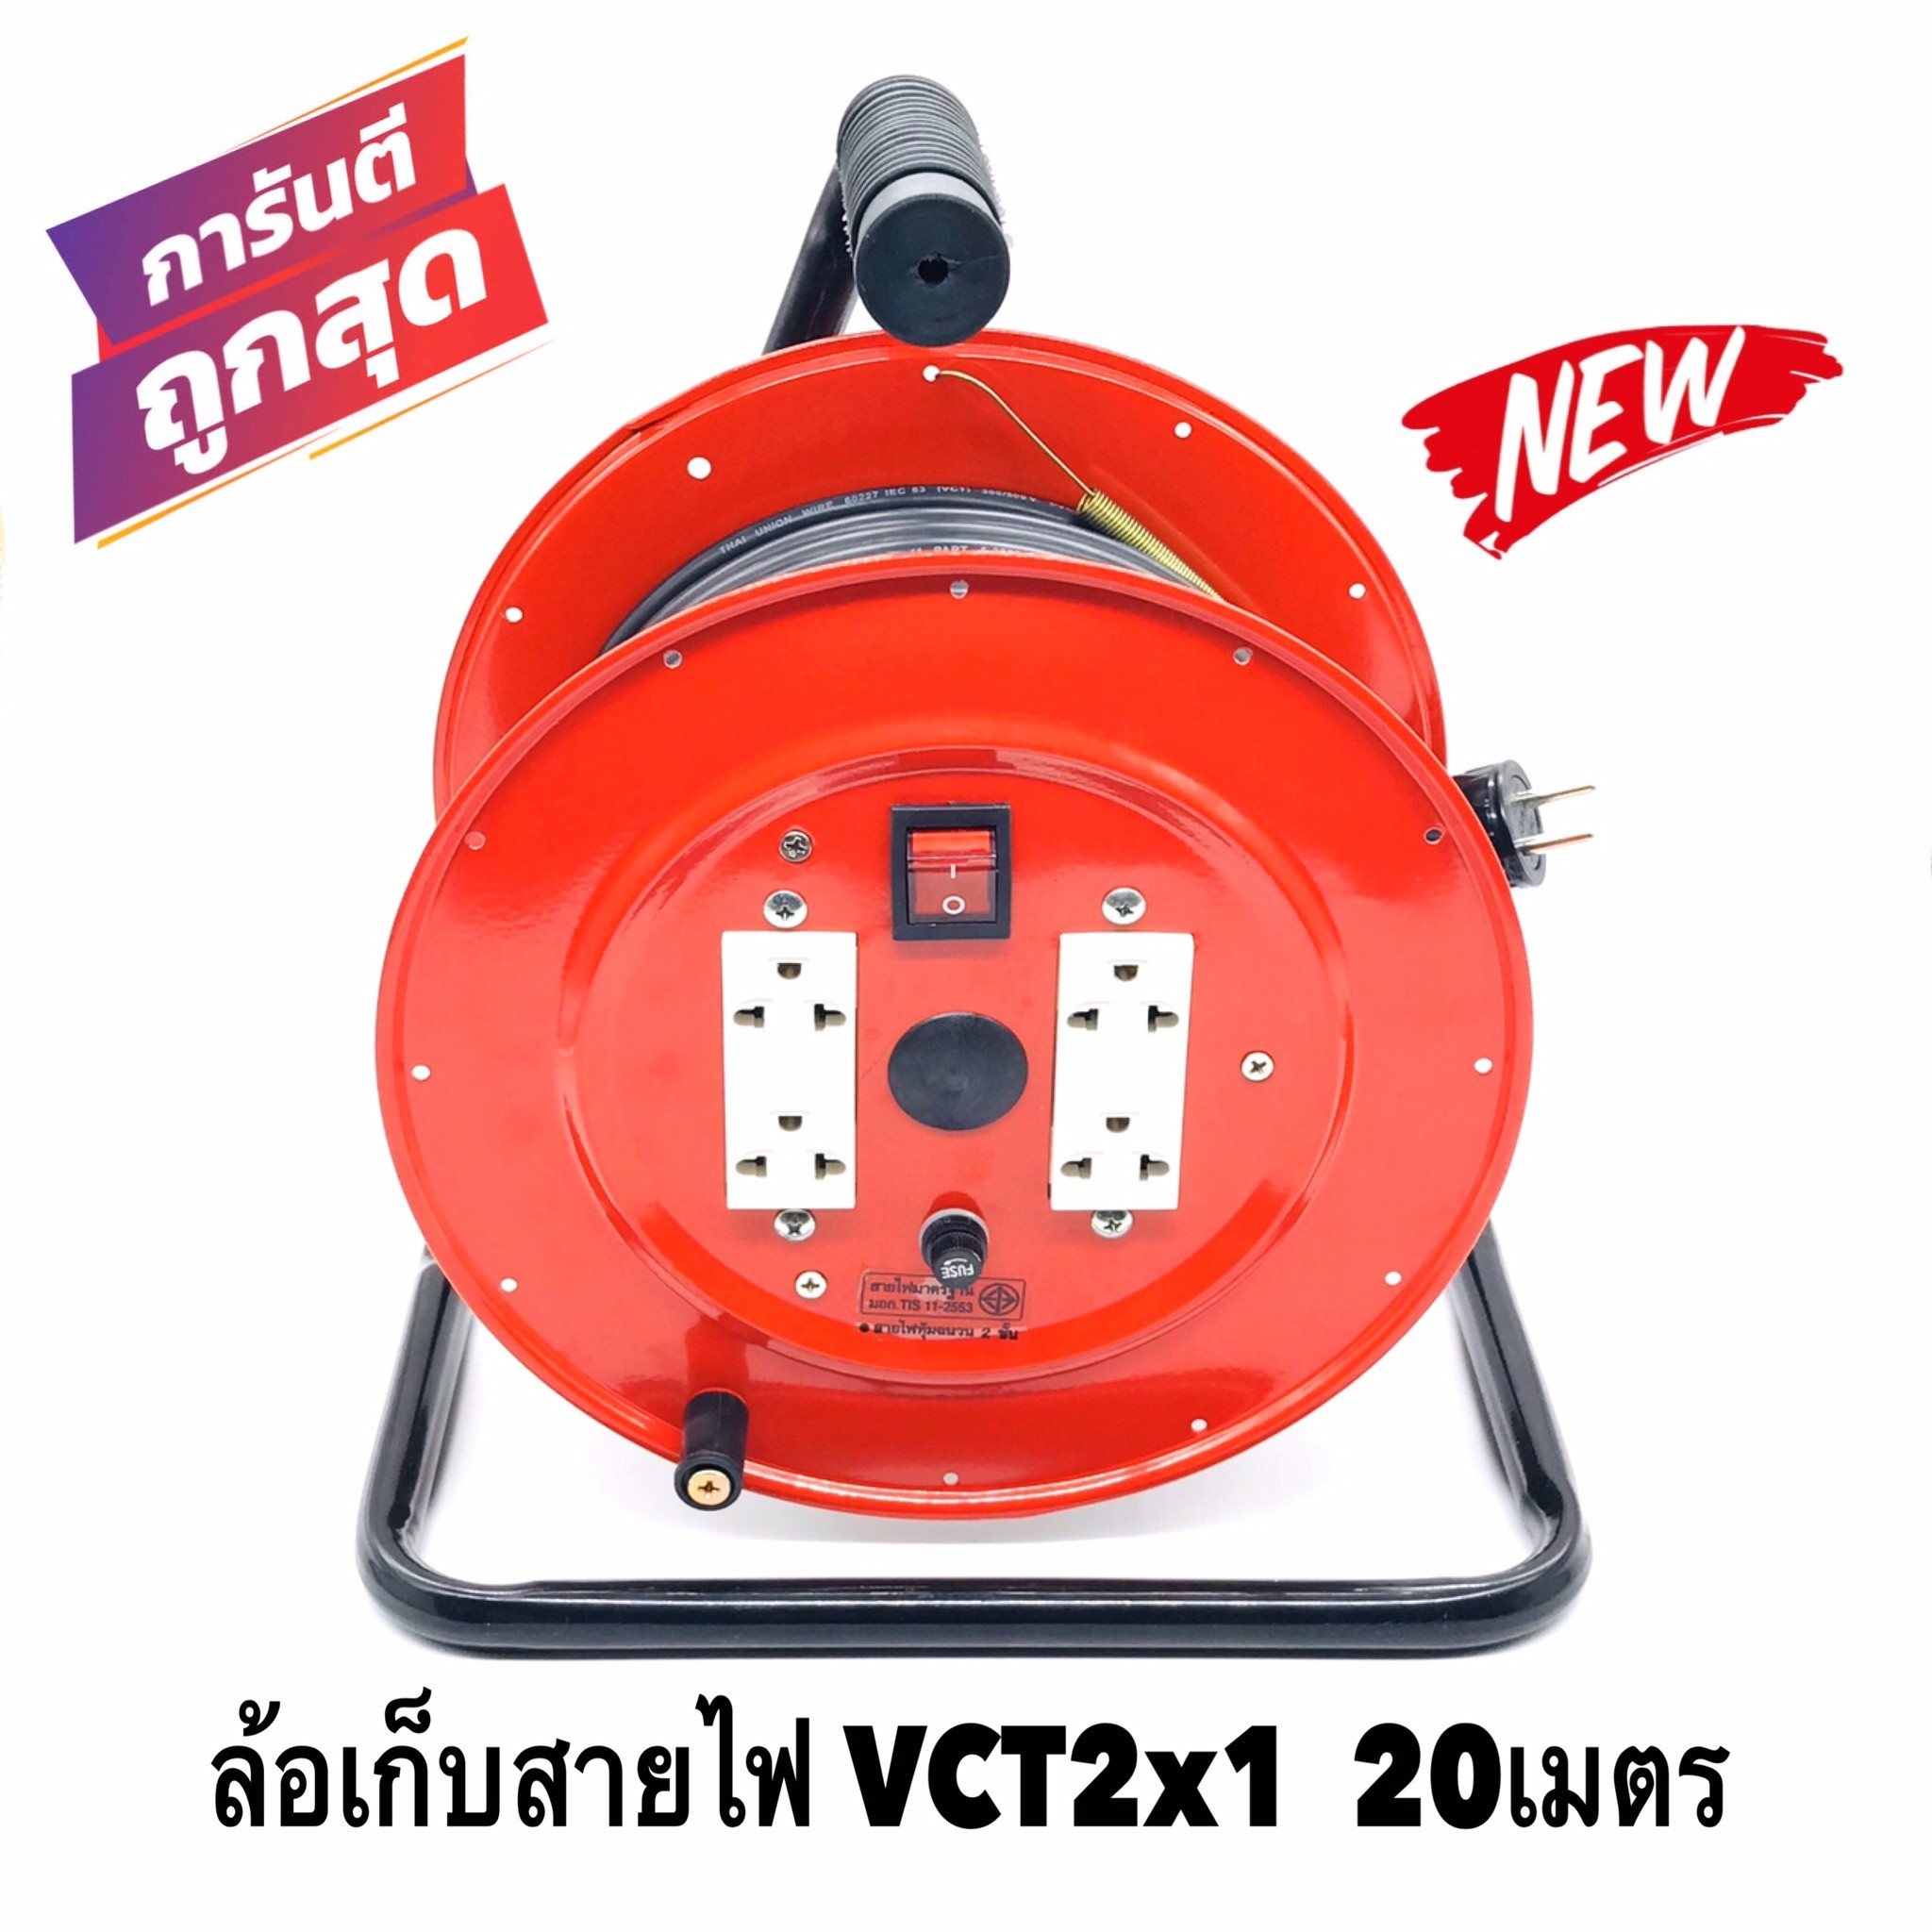 ล้อเก็บสายไฟ VCT 2x1 Sq.mm. พร้อมสาย 20 เมตร  สีแดง รุ่นมีสวิทซ์ควบคุม ปลั๊กกราวคู่ 2ตัว มีฟิวส์ตัดวงจรไฟฟ้า